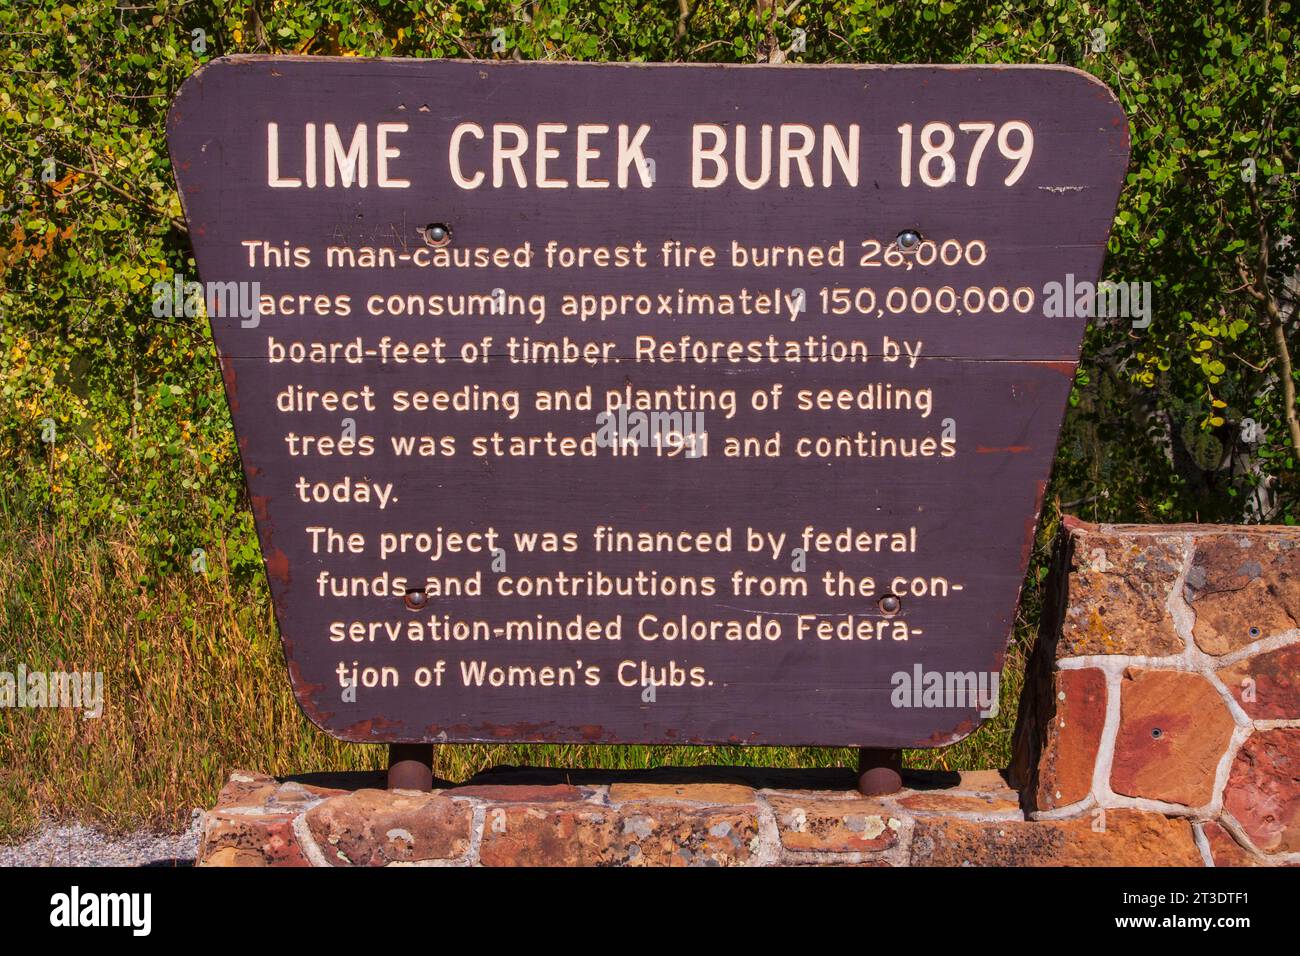 Schild an der Stelle des Lime Creek Burn, an der US 550, dem „Million Dollar Highway“, in Colorado. Dieser Teil der US 550 ist Teil des San Juan Skyway. Stockfoto